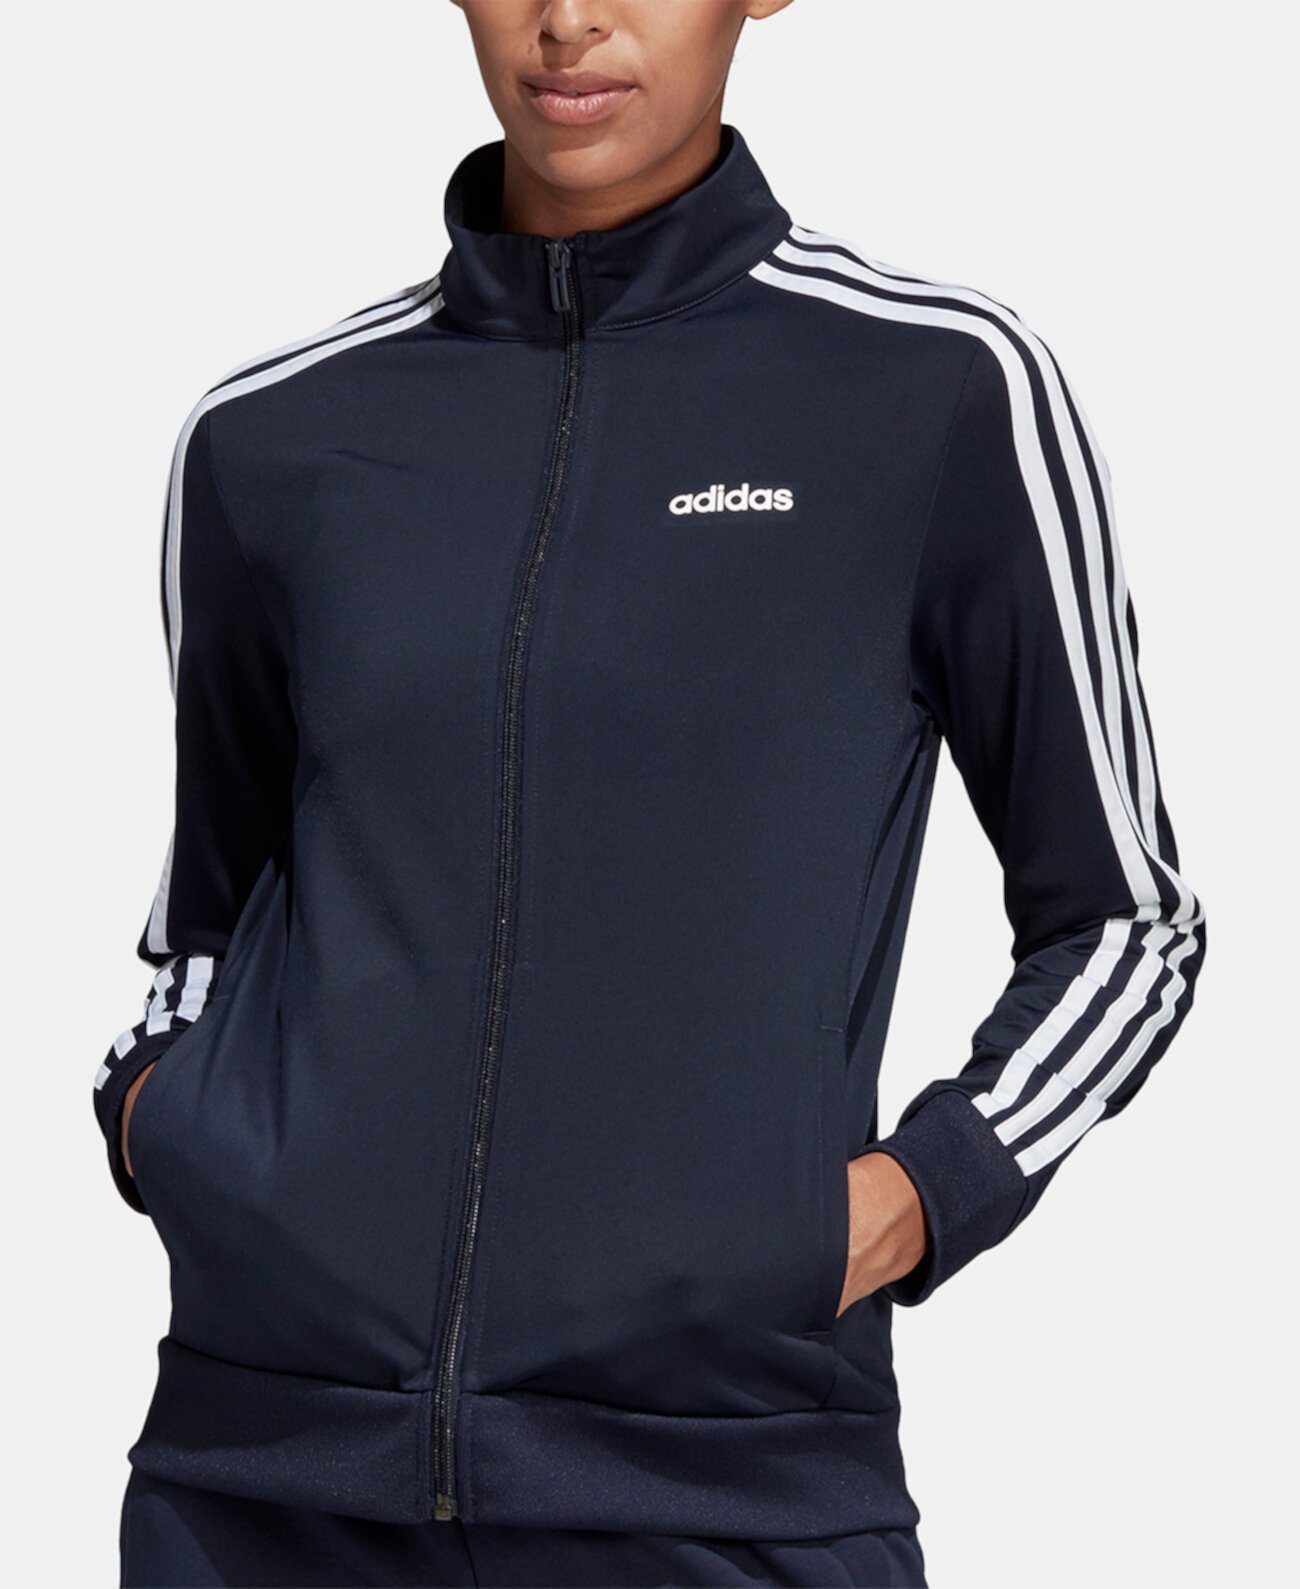 Женская трикотажная спортивная куртка Essential с 3 полосками Adidas